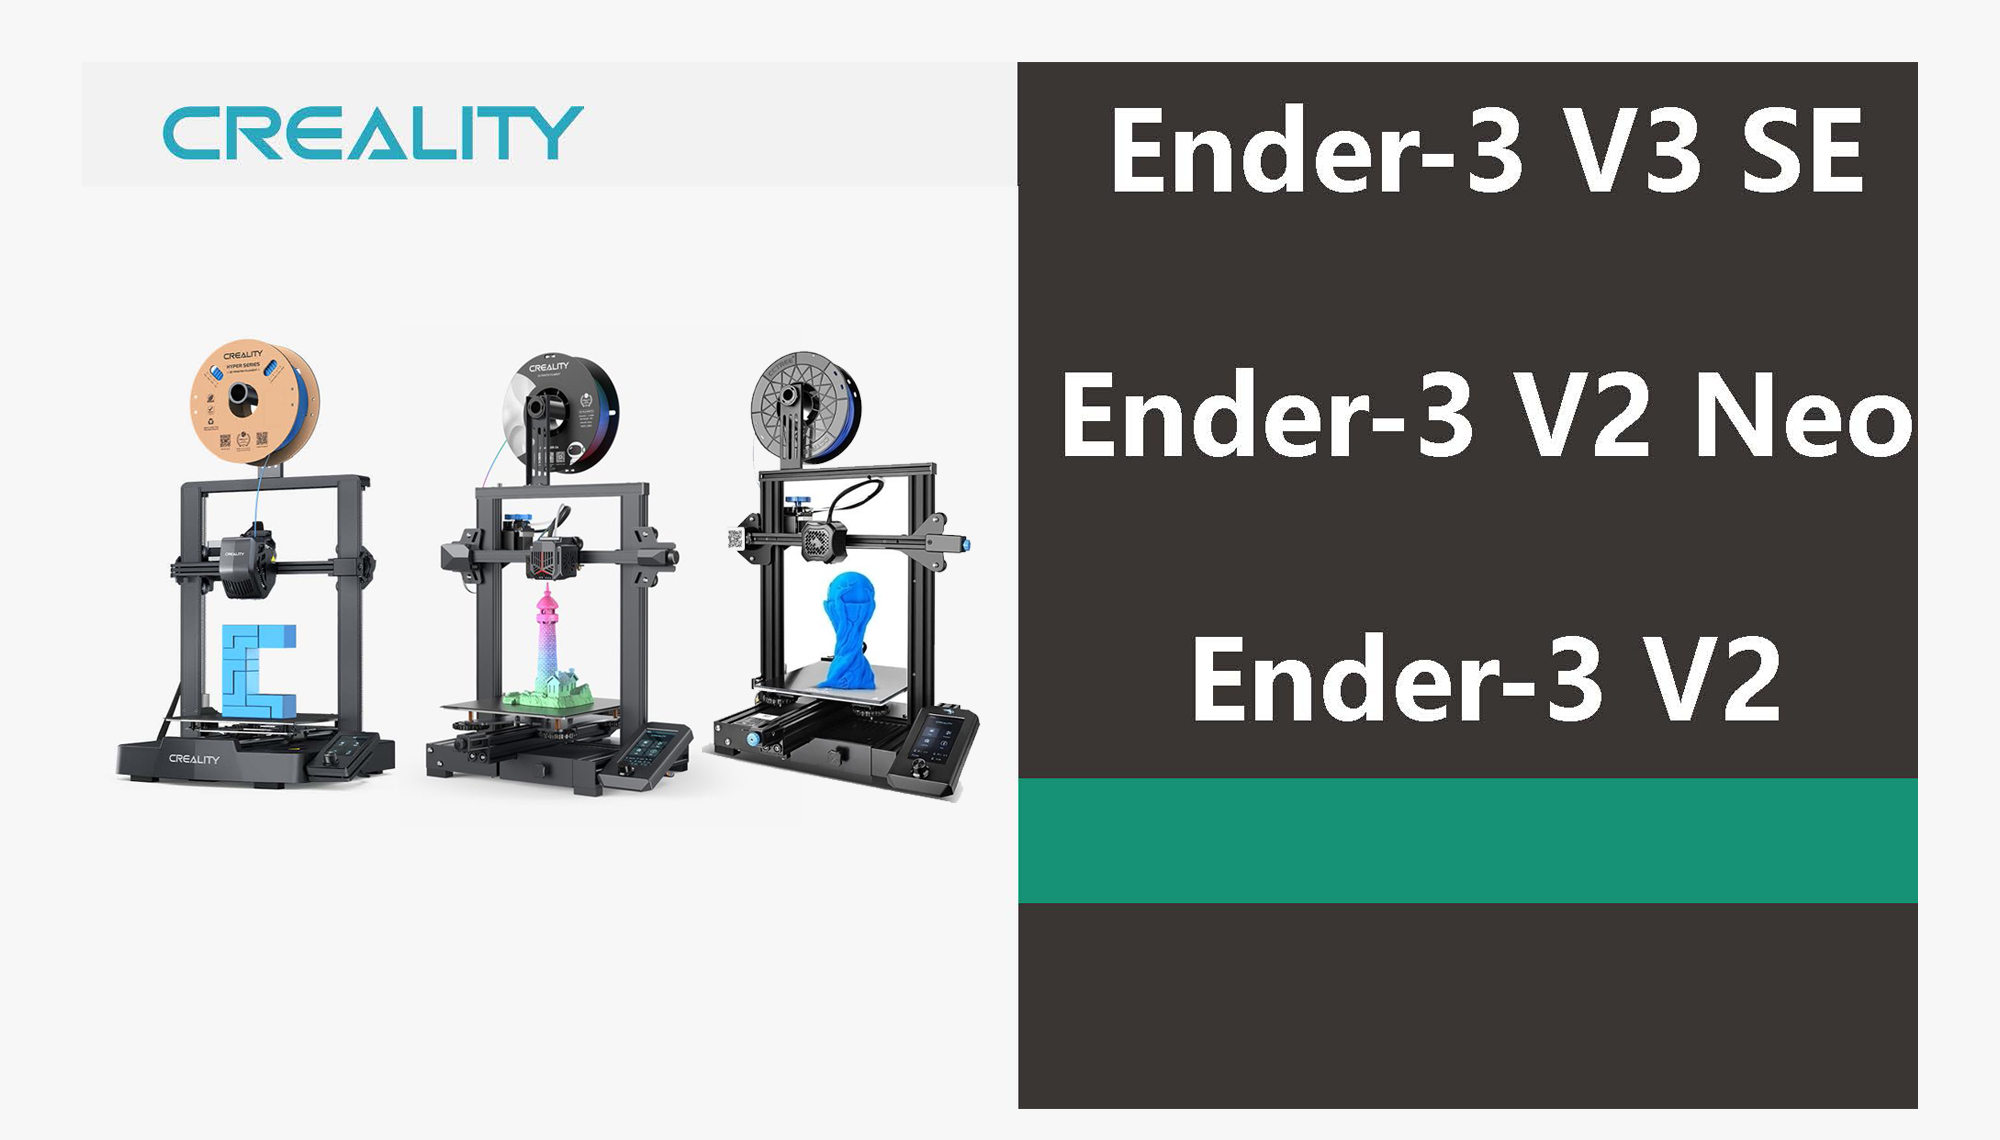 Ender 3 V3 SE vs. Ender 3 V2 vs. Ender 3 V2 Neo